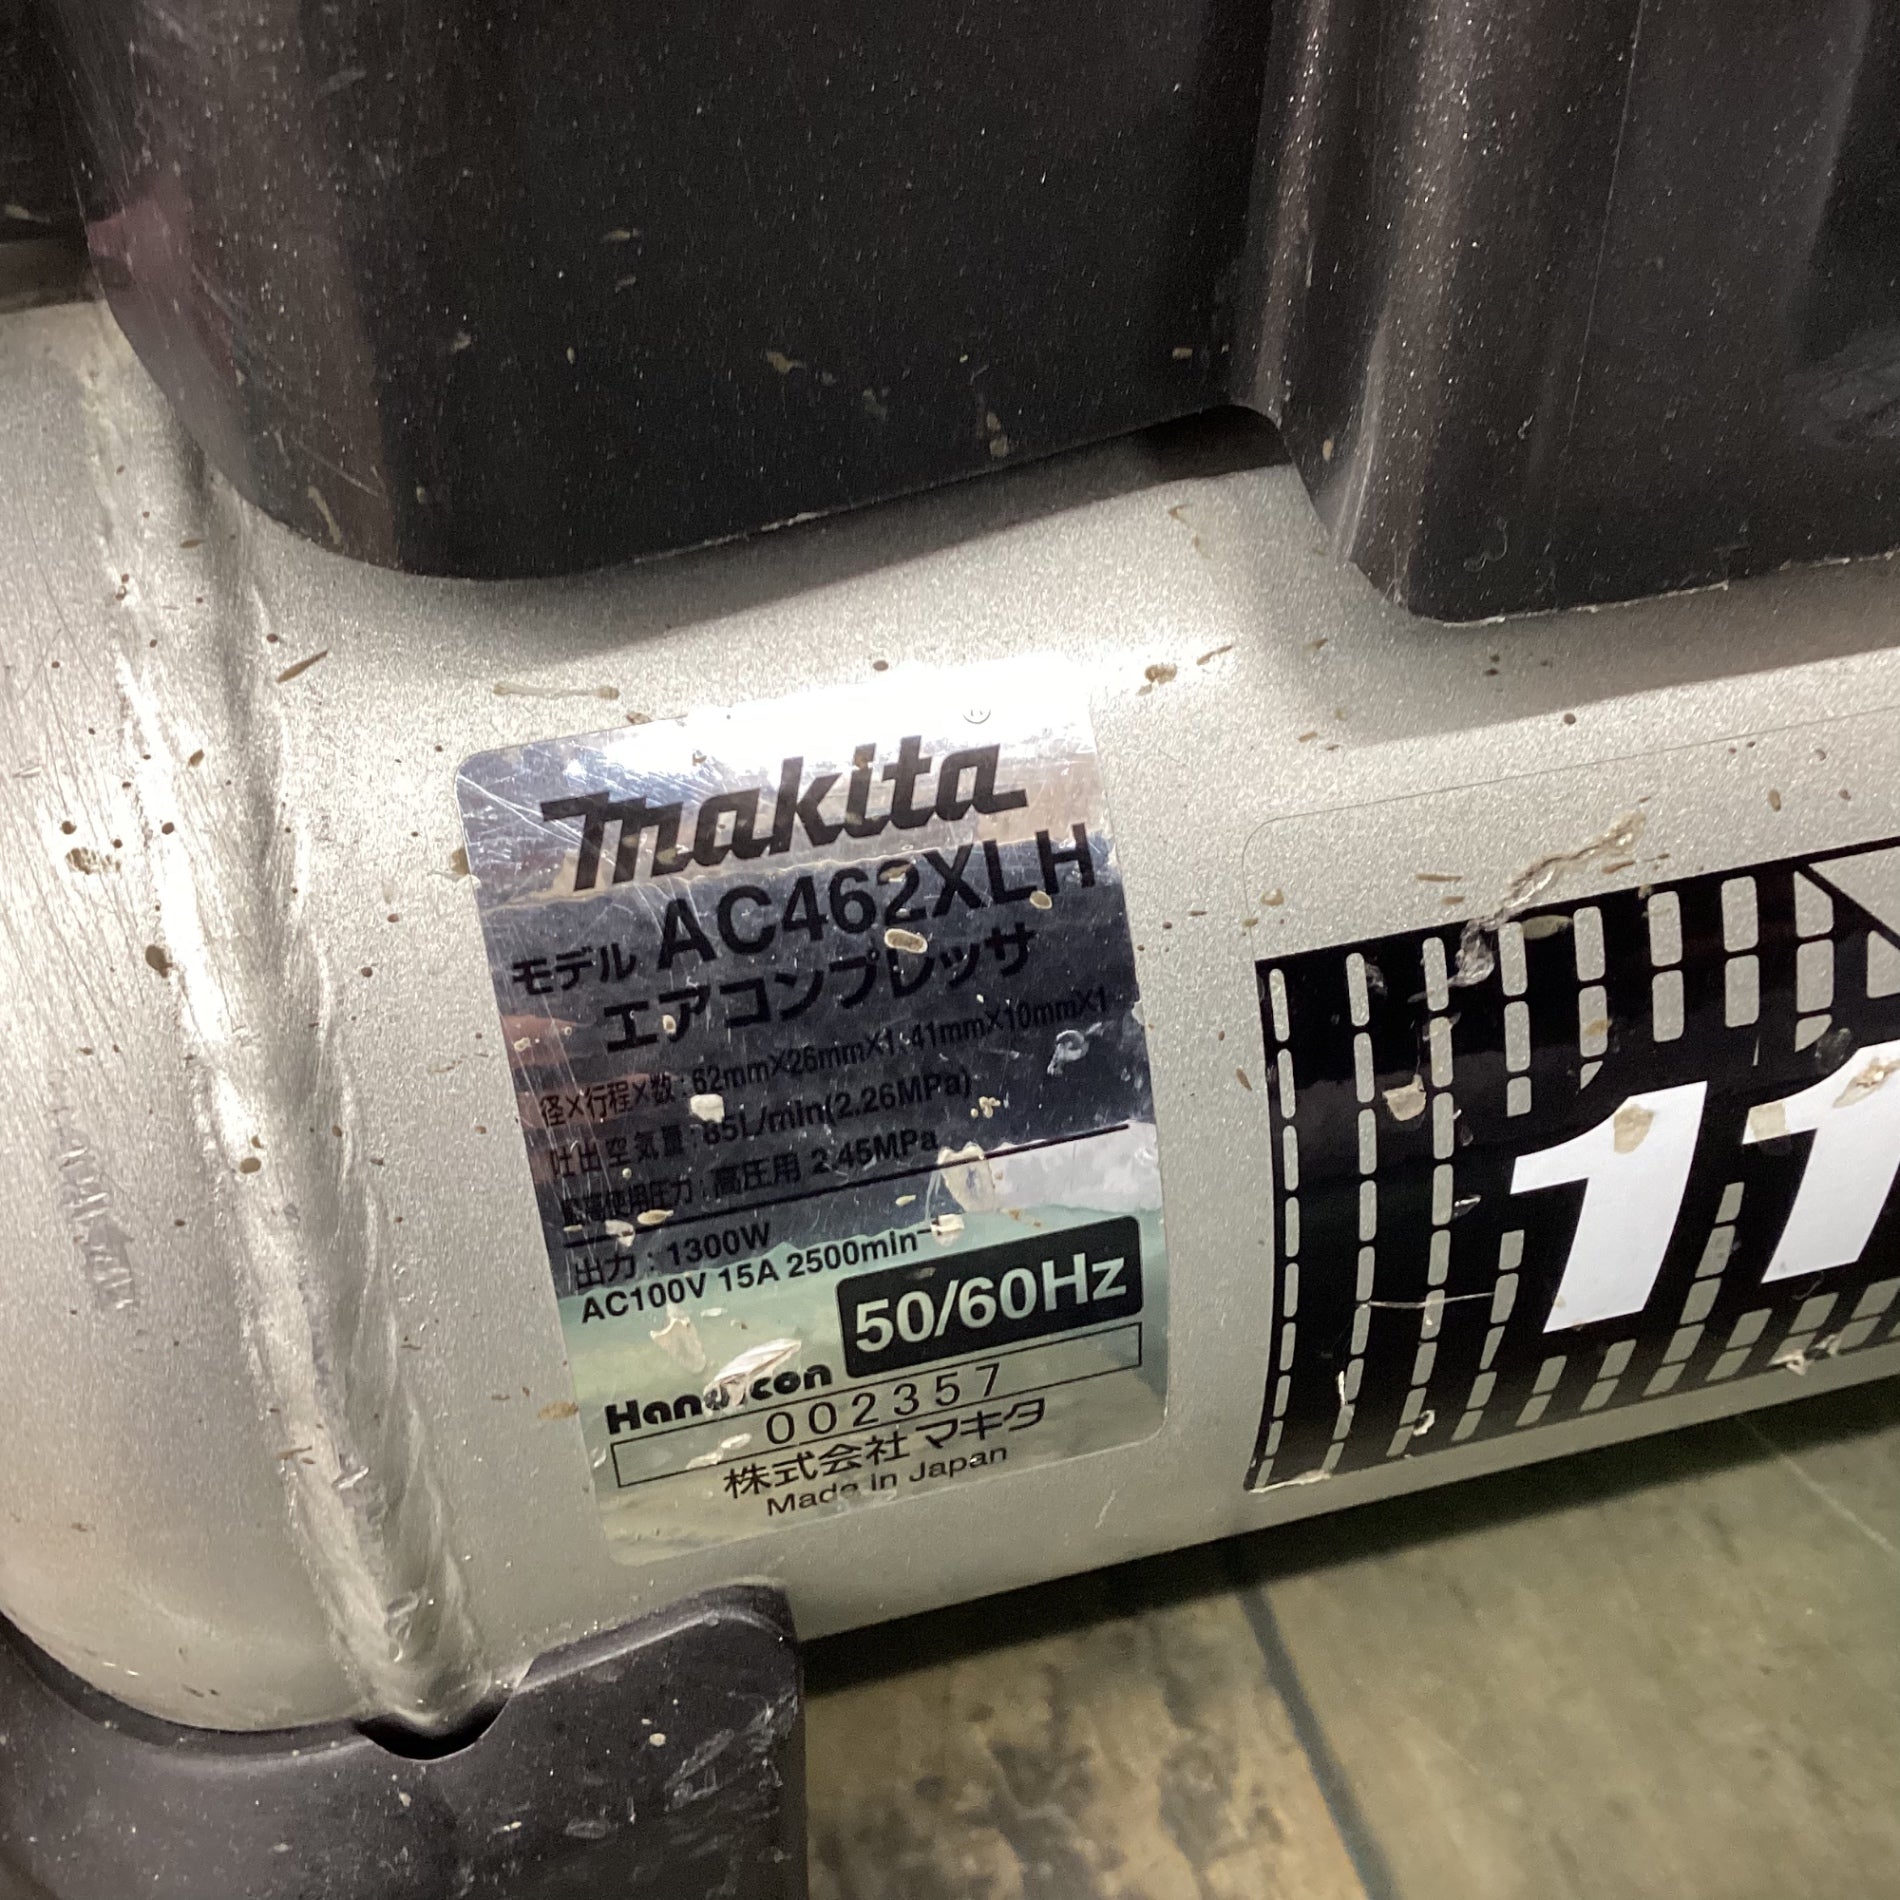 マキタ(makita) 高圧専用エアコンプレッサー AC462XLHB 【東大和店】 – アクトツールオンラインショップ